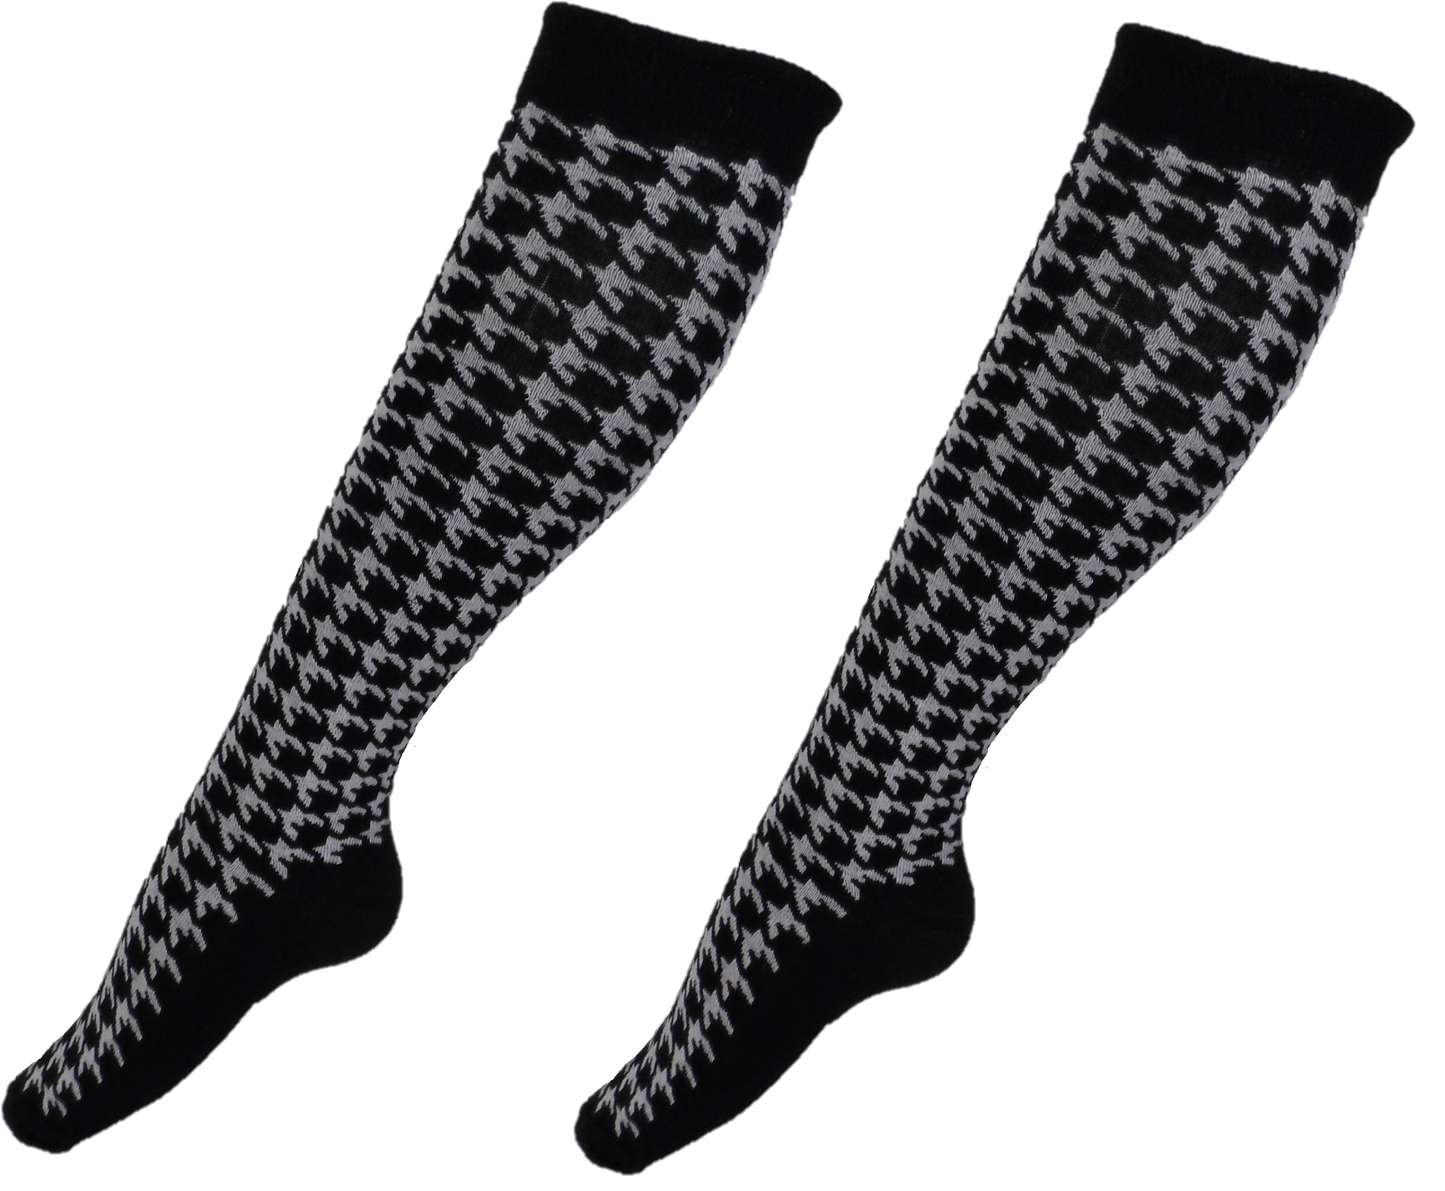 Ladies 2 Pair Pack of Black/White Dogtooth Knee High Socks